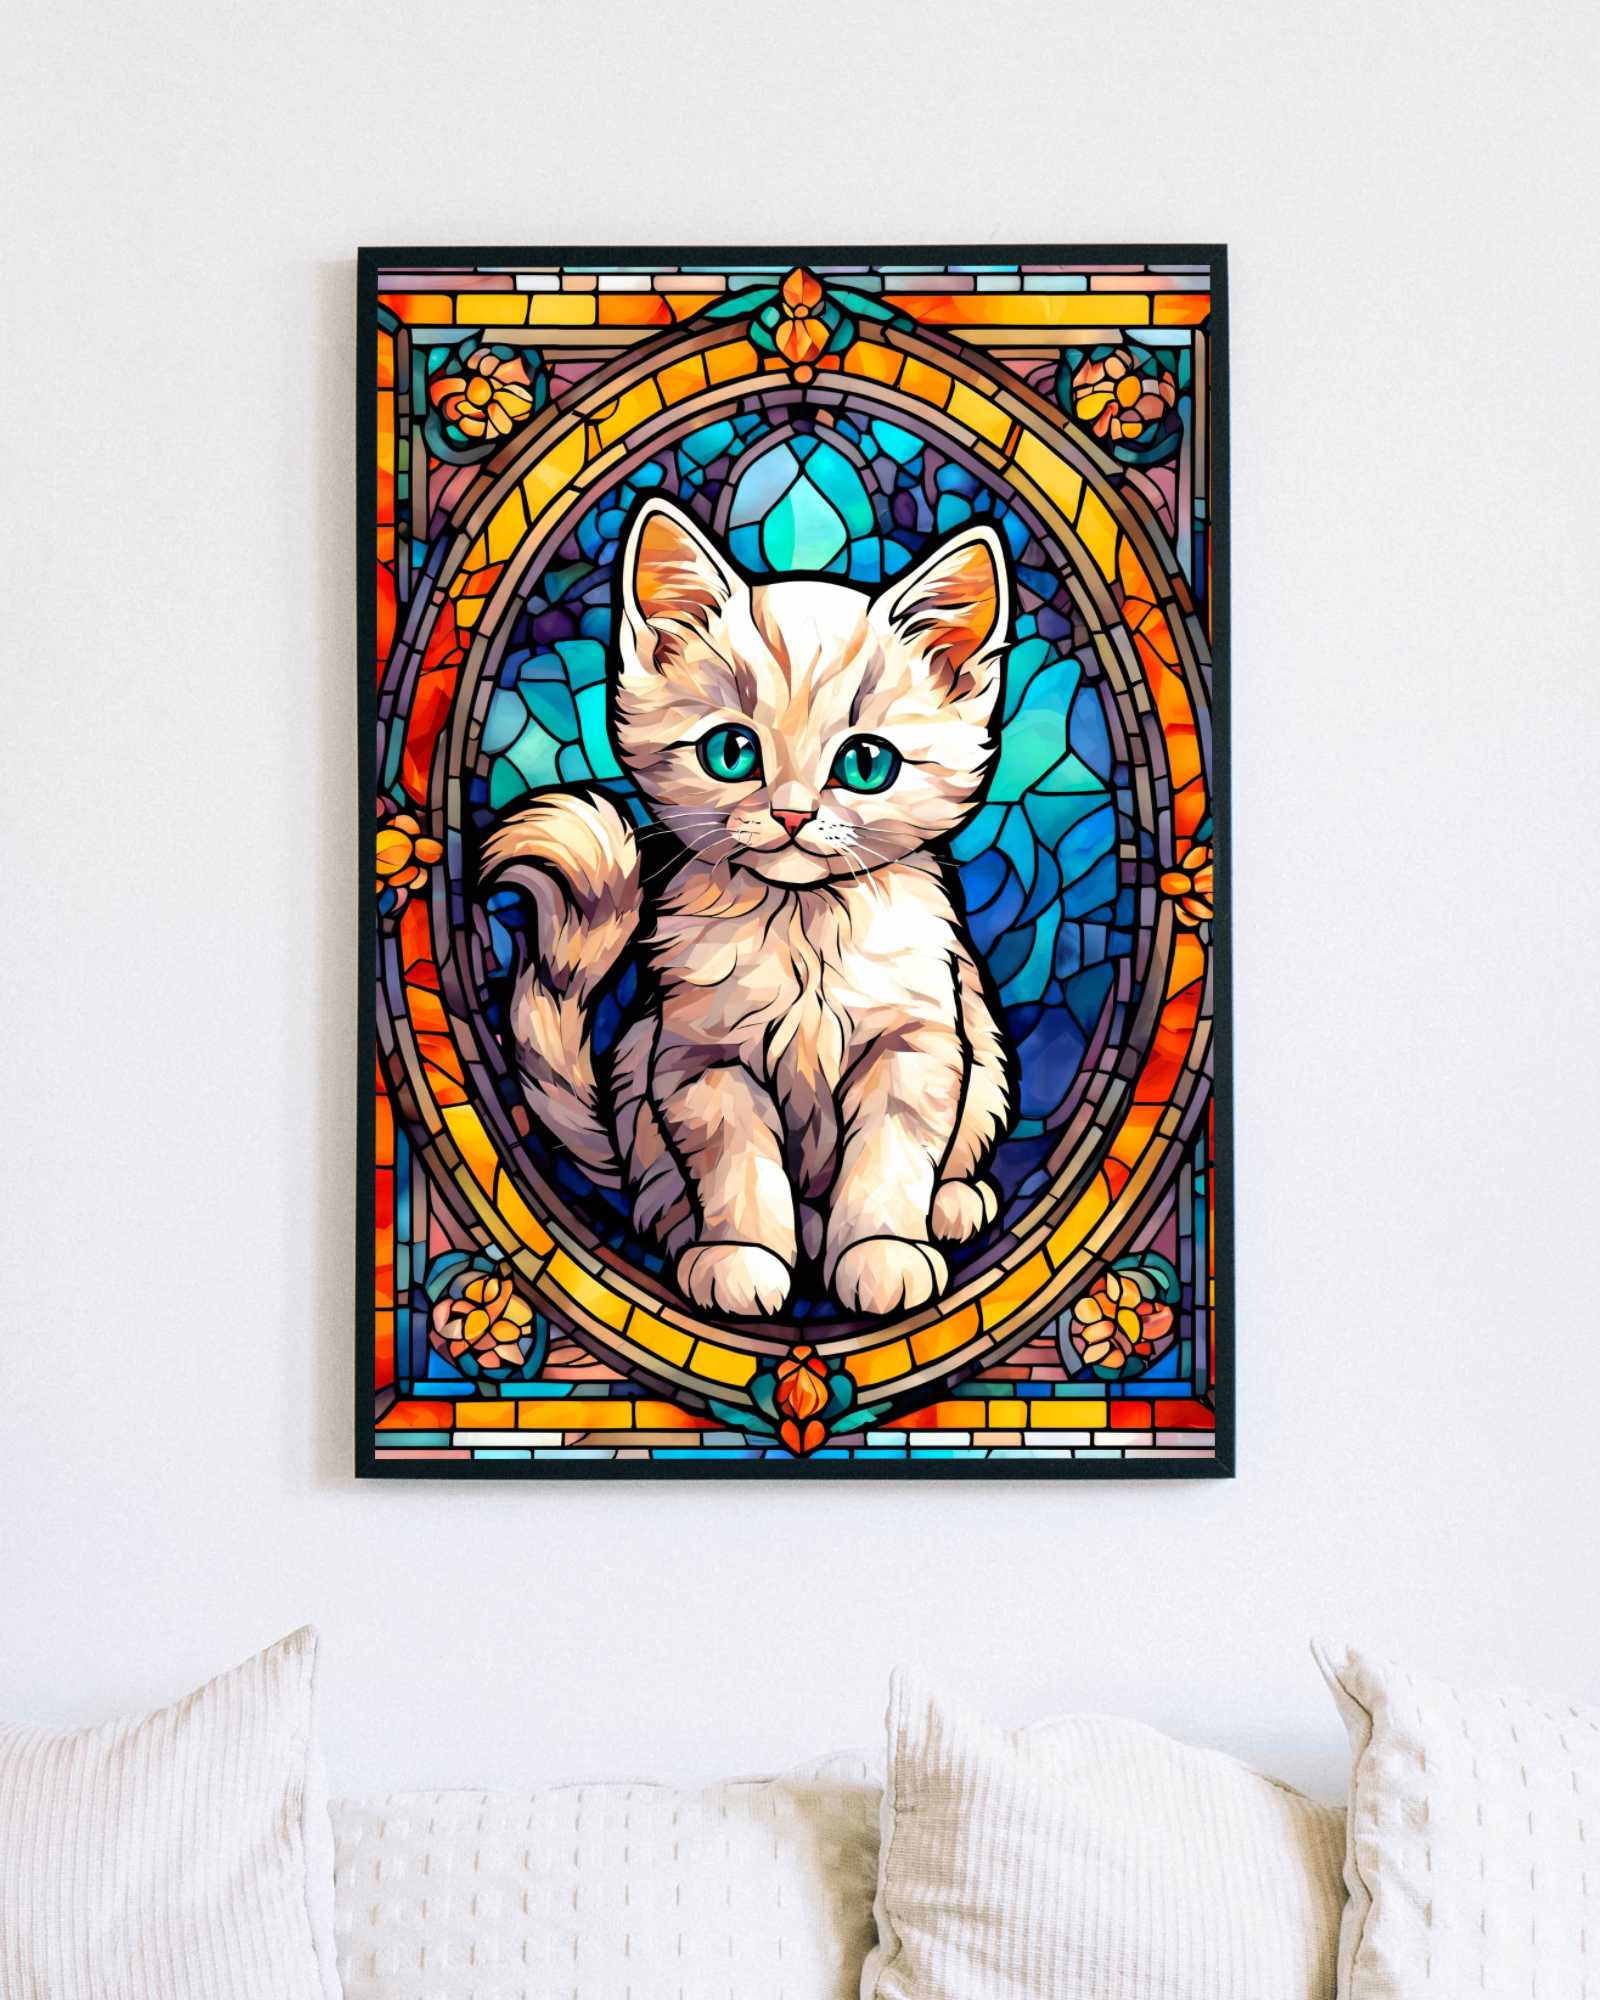 Snow the curious kitten - Art print